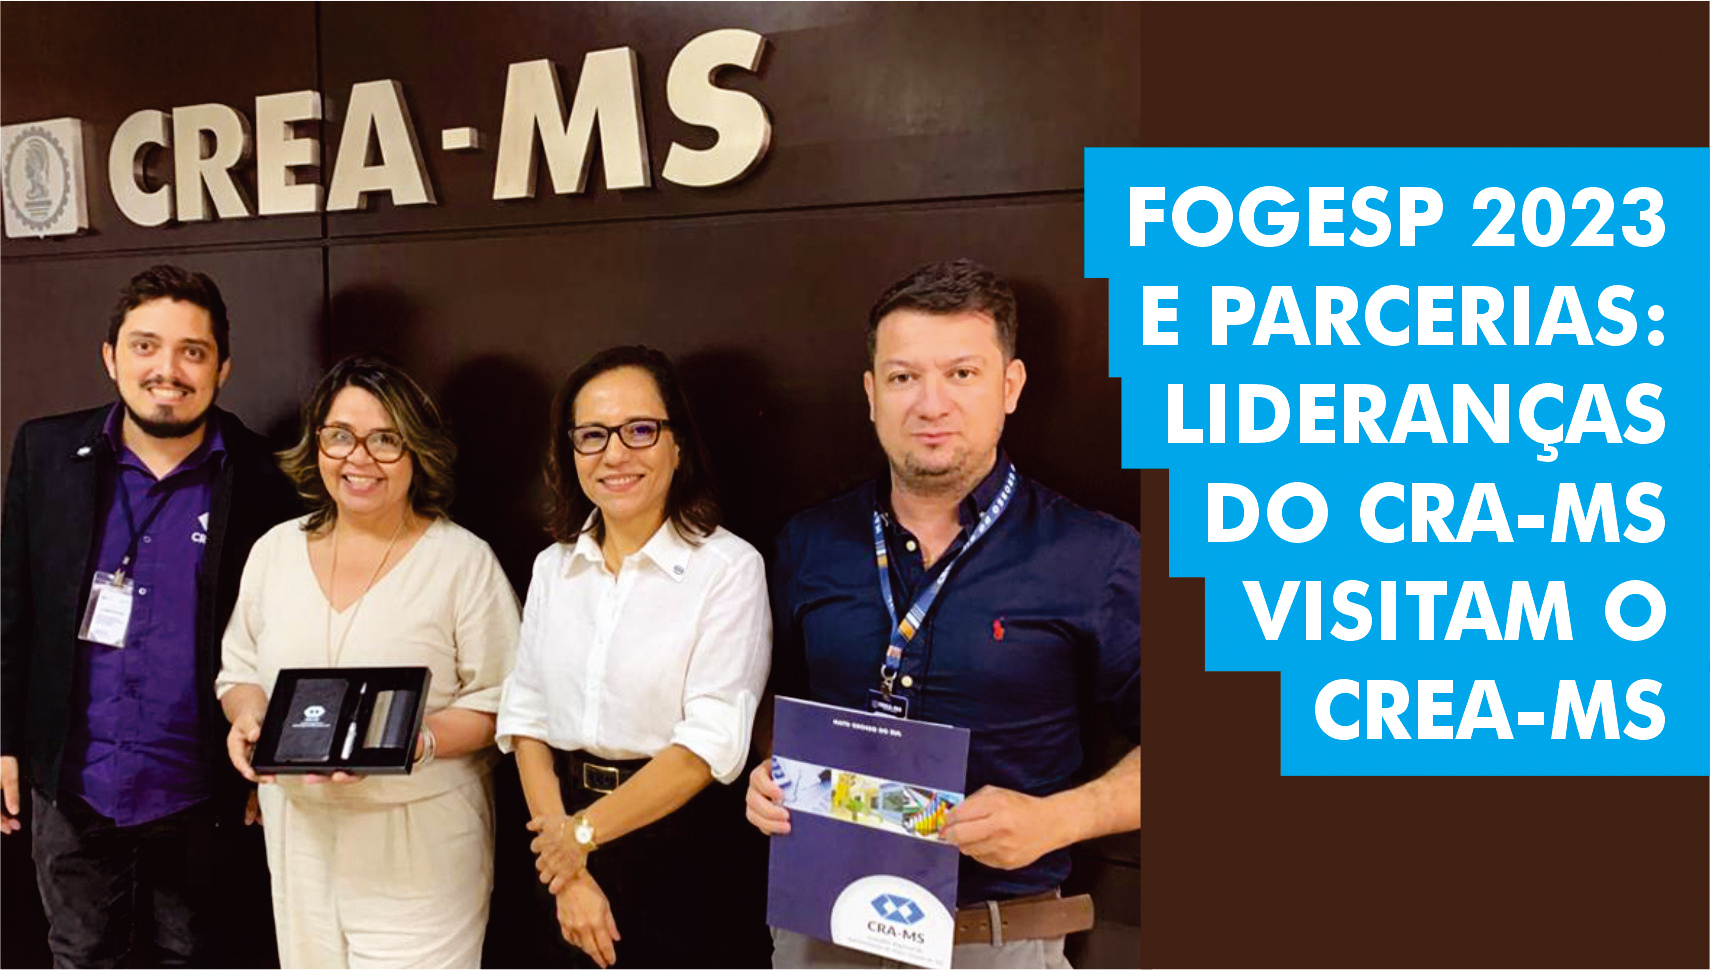 FOGESP 2023 e parcerias: lideranças do CRA-MS visitam o CREA-MS